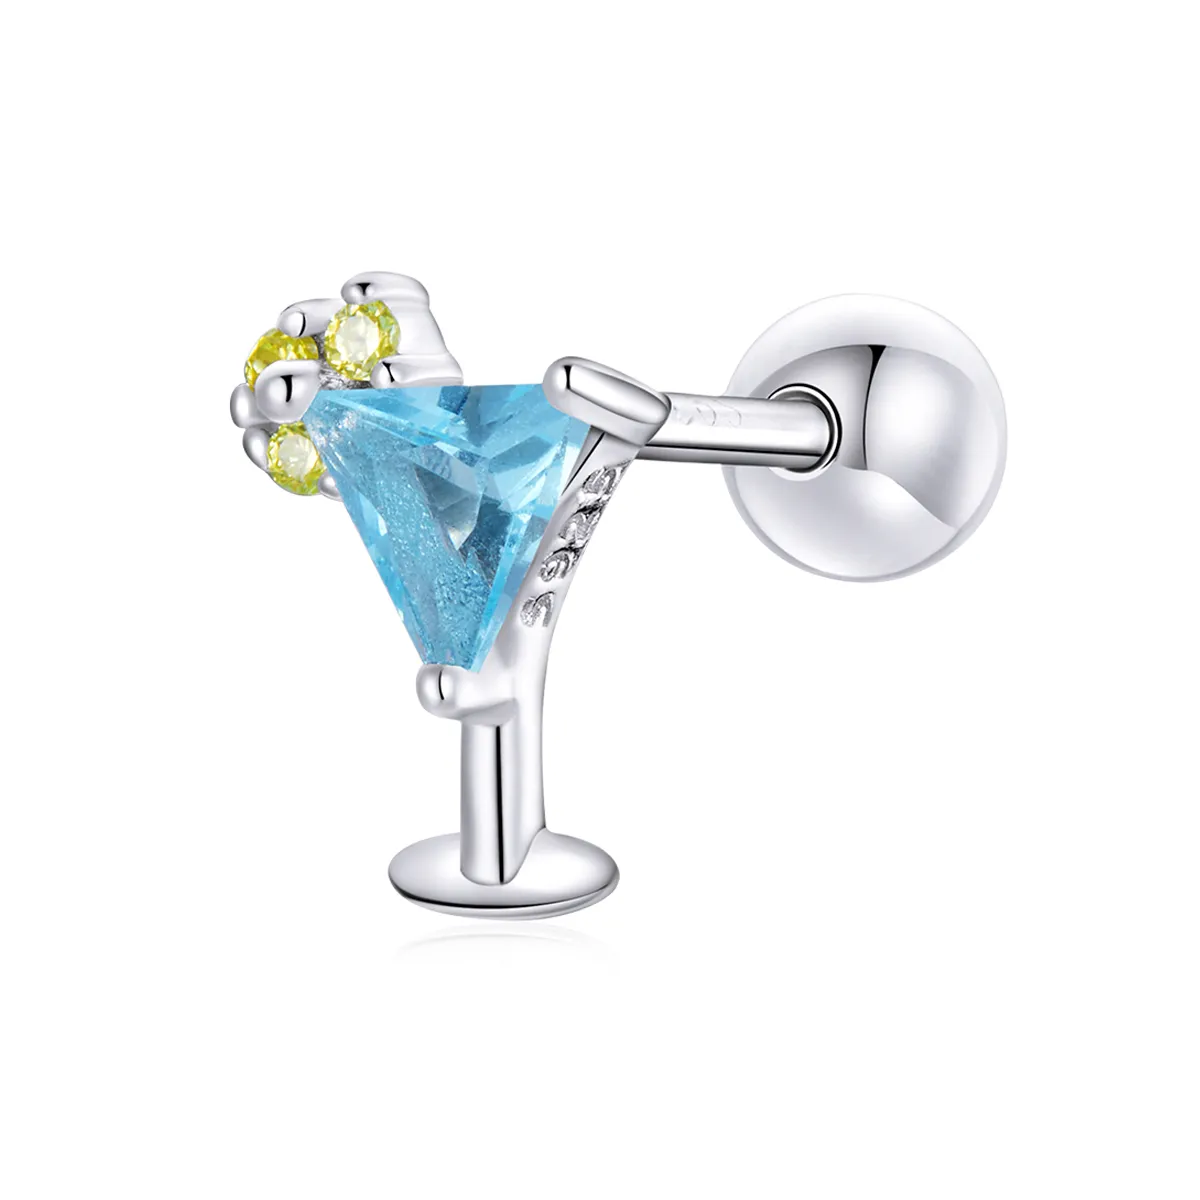 Stil Pandora de vară - Cercei drăgălași în formă de băutură răcoritoare - BSE489